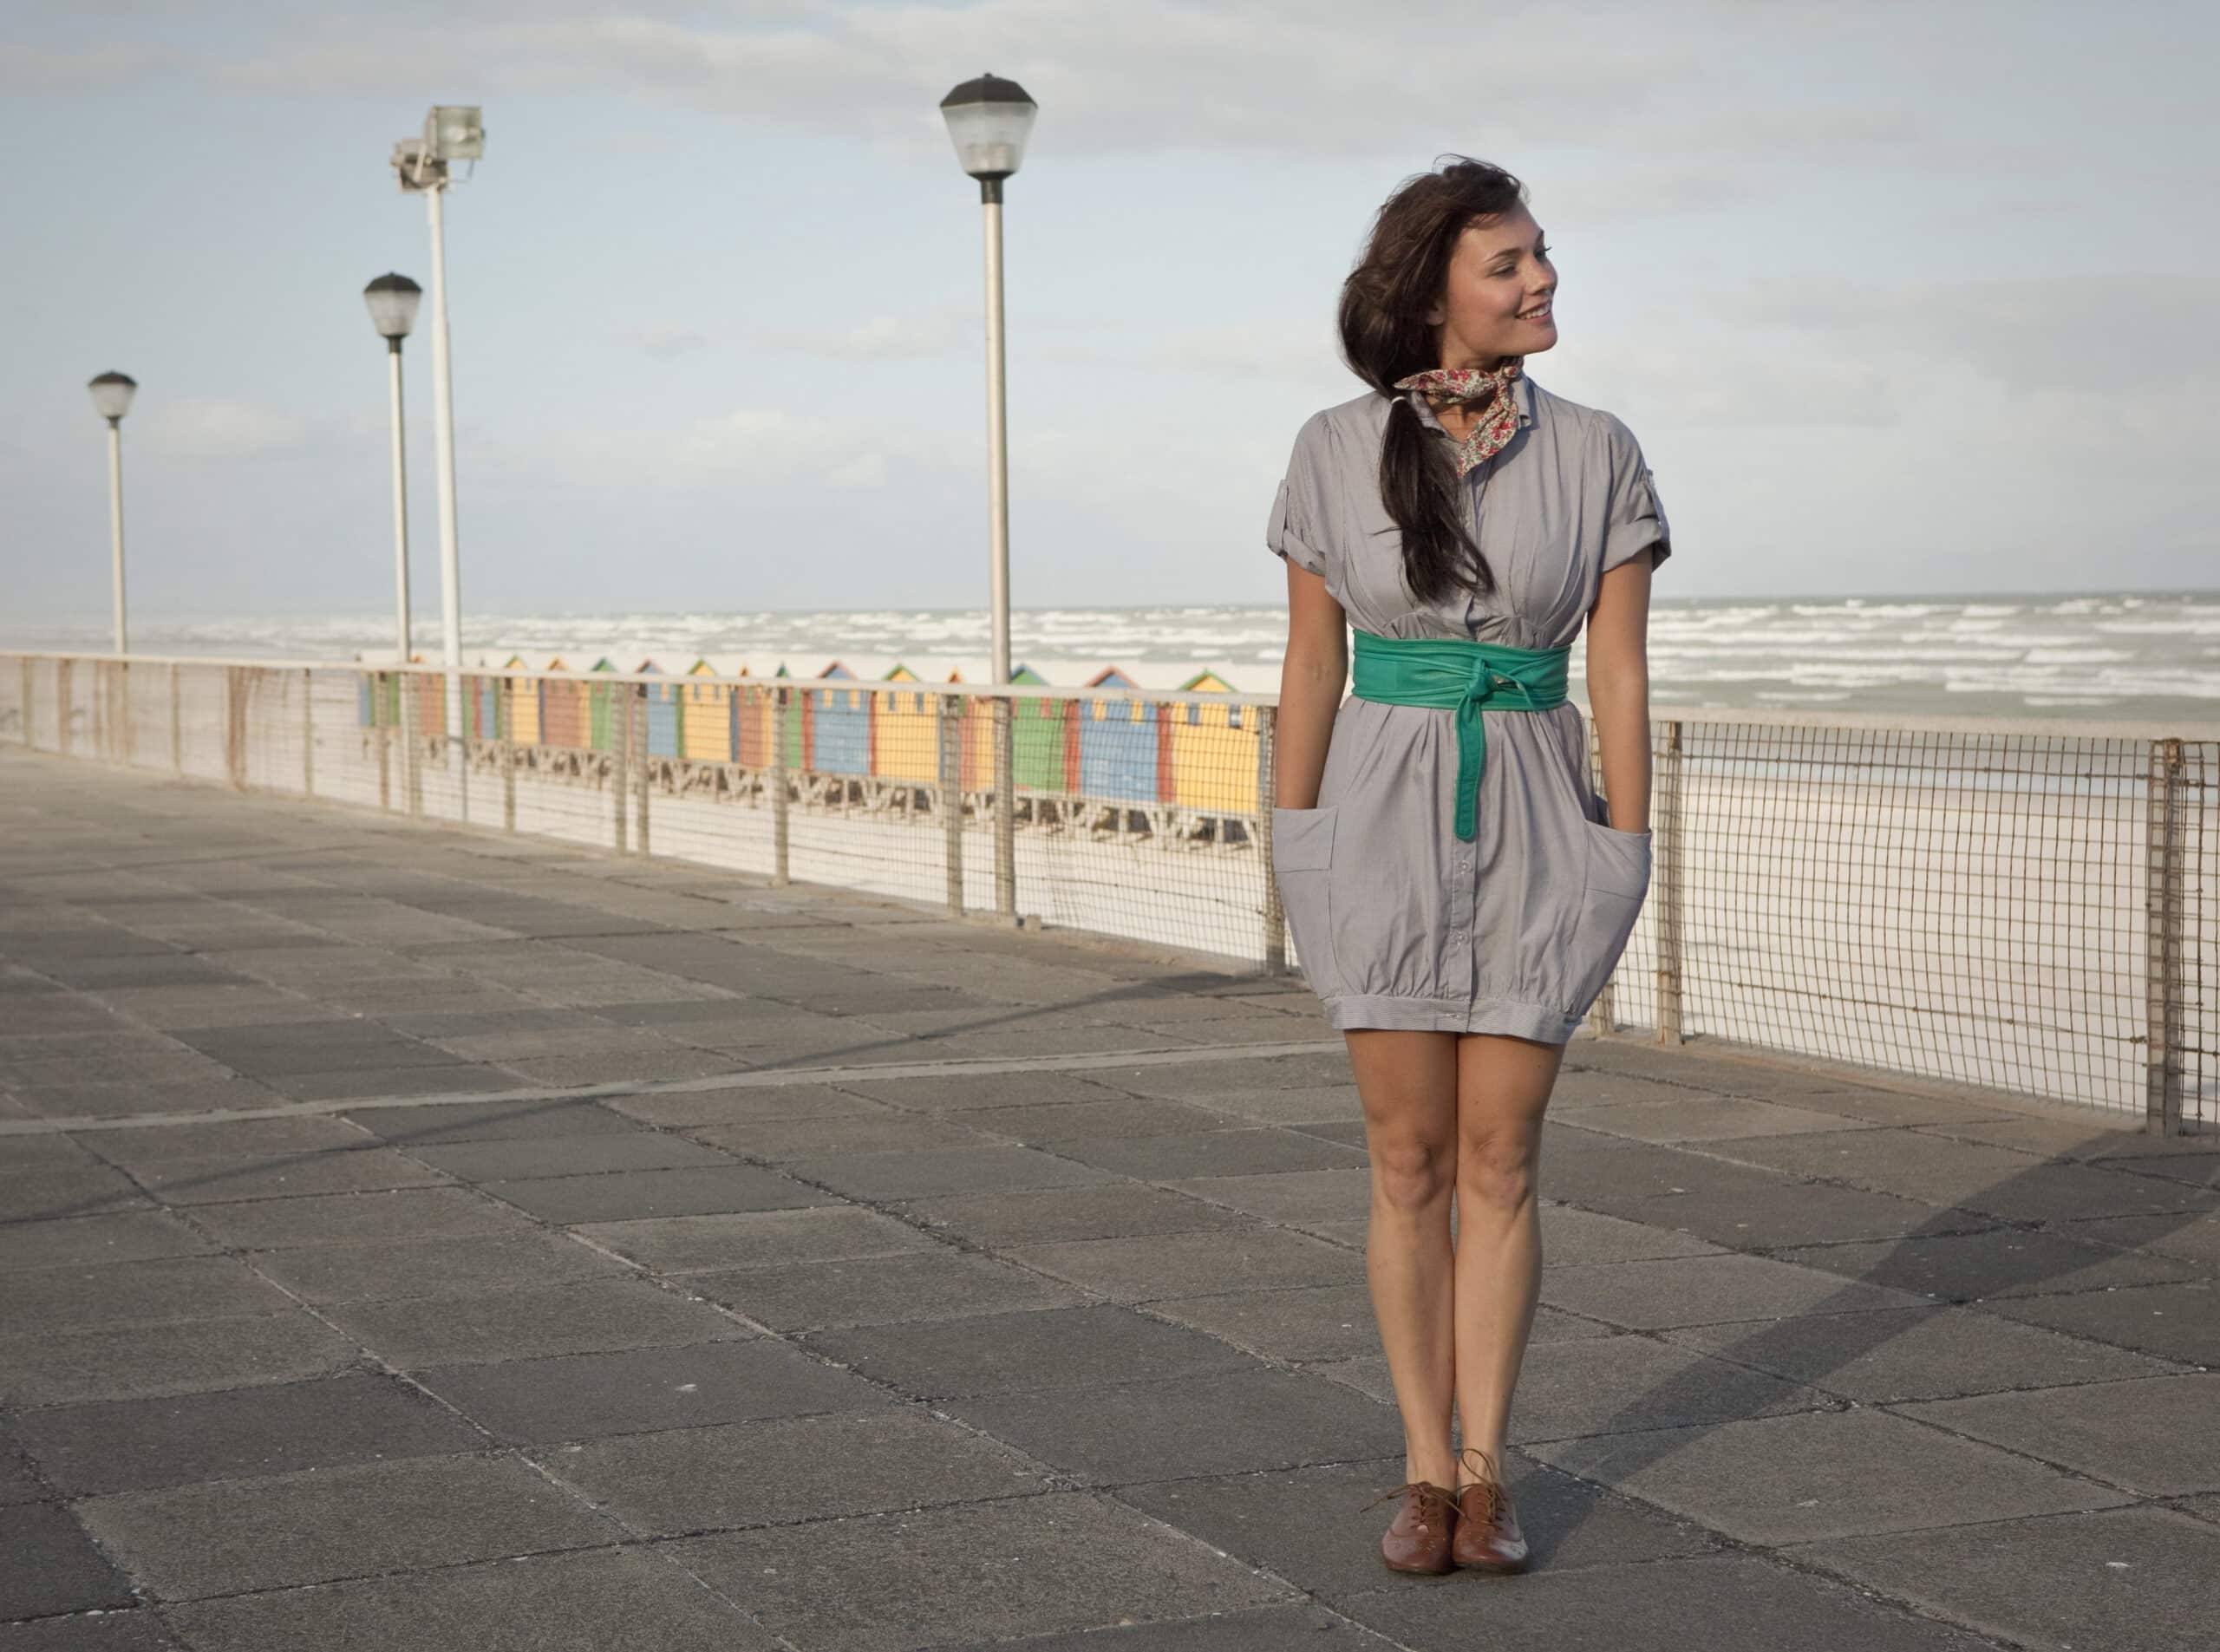 Eine Frau steht auf einer Strandpromenade und blickt in die Ferne. Sie trägt ein graues Kleid mit einem grünen Gürtel und einem Schal. Im Hintergrund sind bunte Strandhütten und ein stürmisches Meer zu sehen. © Fotografie Tomas Rodriguez